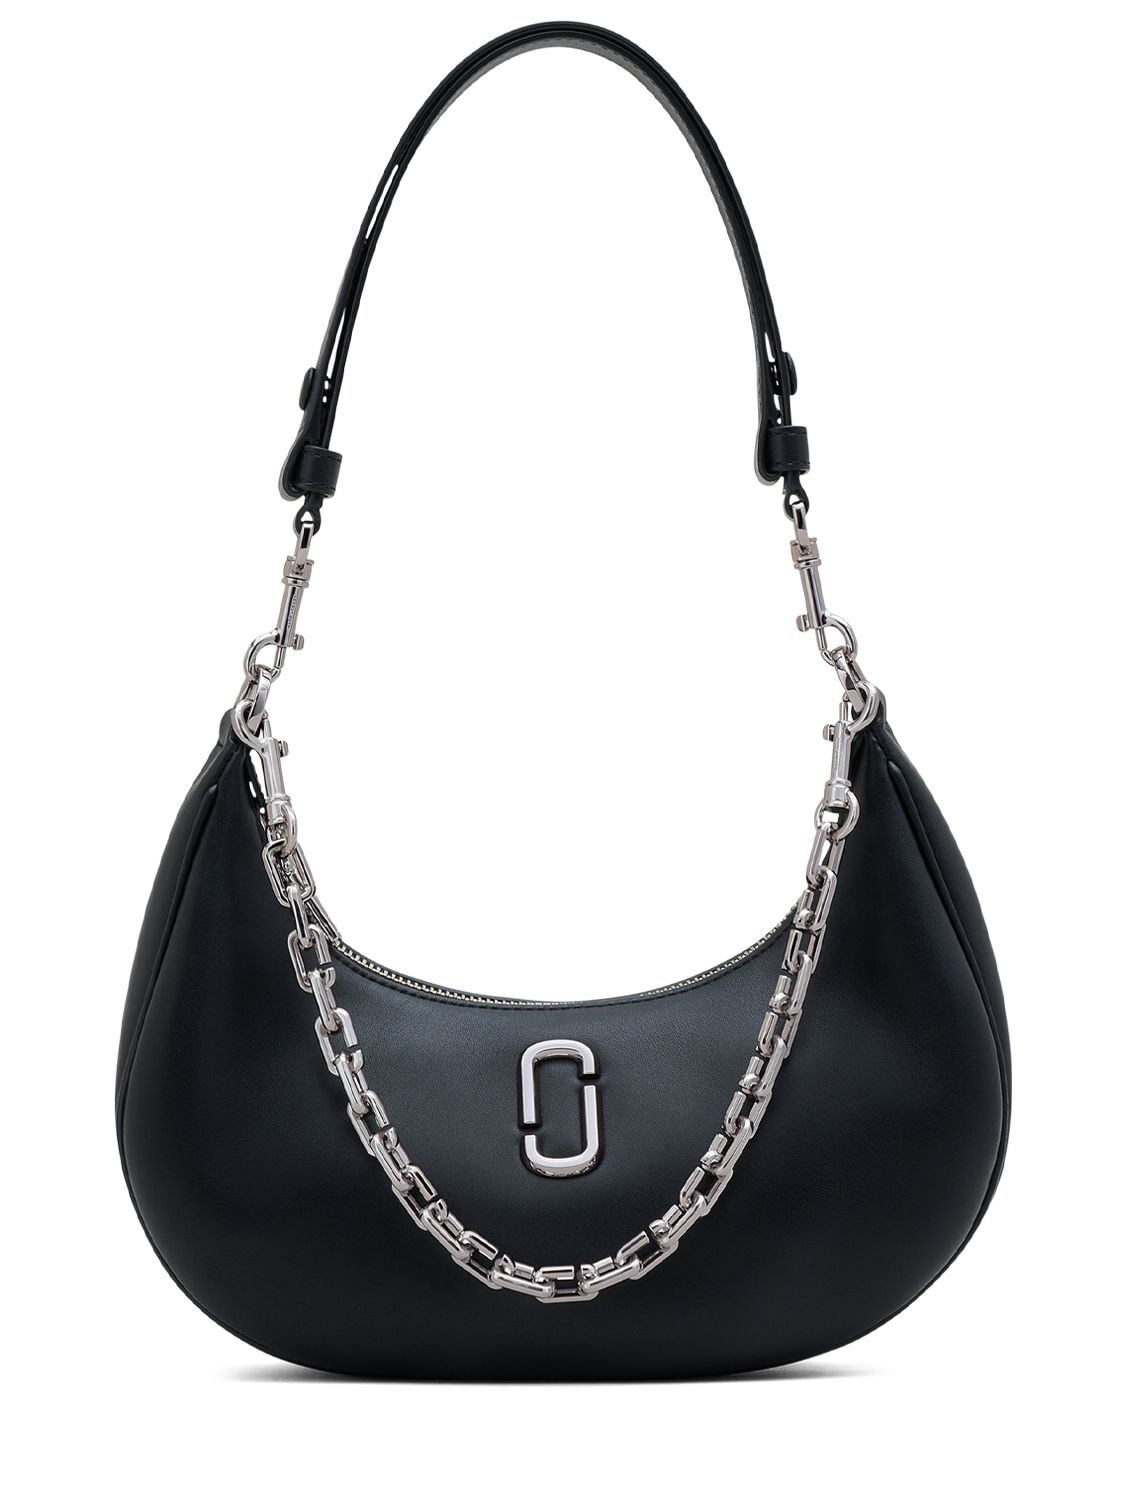 The J Marc Leather Shoulder Bag in Black - Marc Jacobs